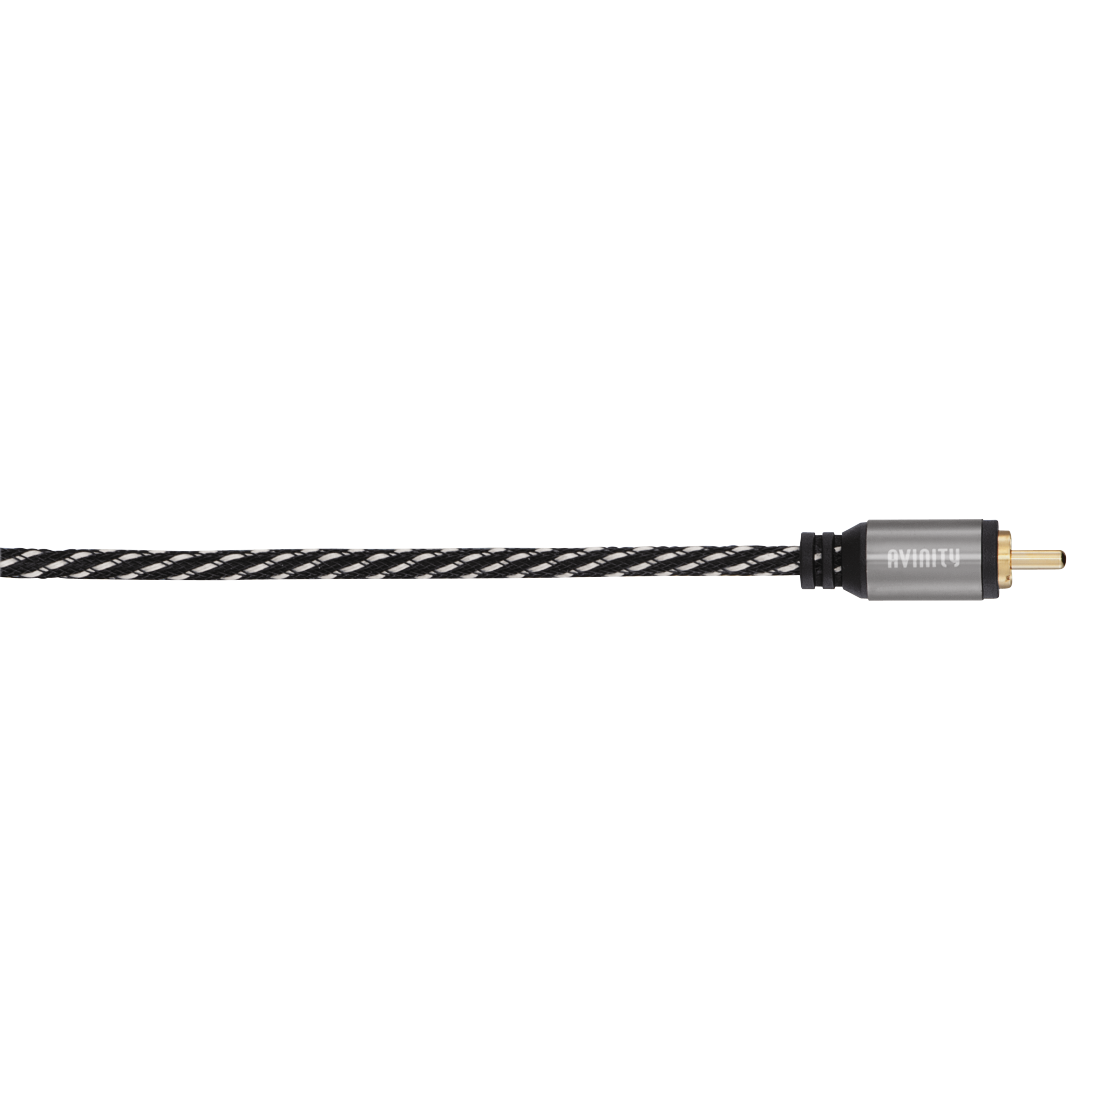 abx Druckfähige Abbildung - Avinity, Digitales Cinch-Kabel, 1 Stecker - 1 Stecker, Gewebe, vergoldet, 1,5 m